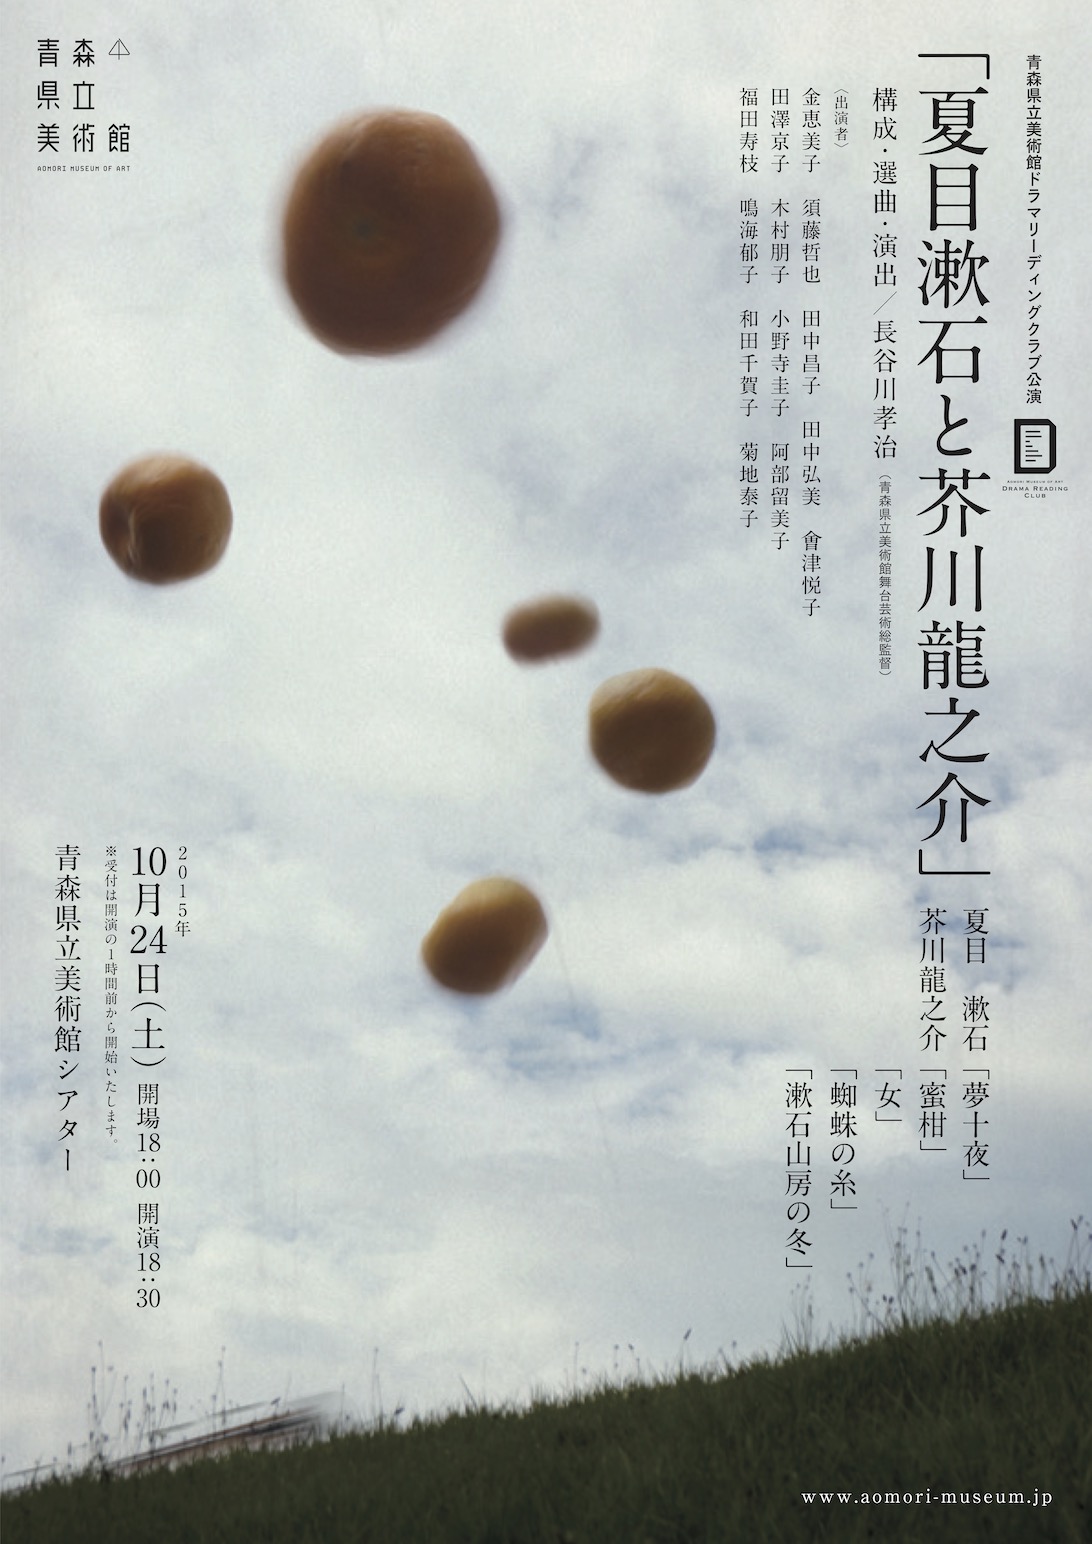 青森県立美術館ドラマリーディングクラブ公演「夏目漱石と芥川龍之介」